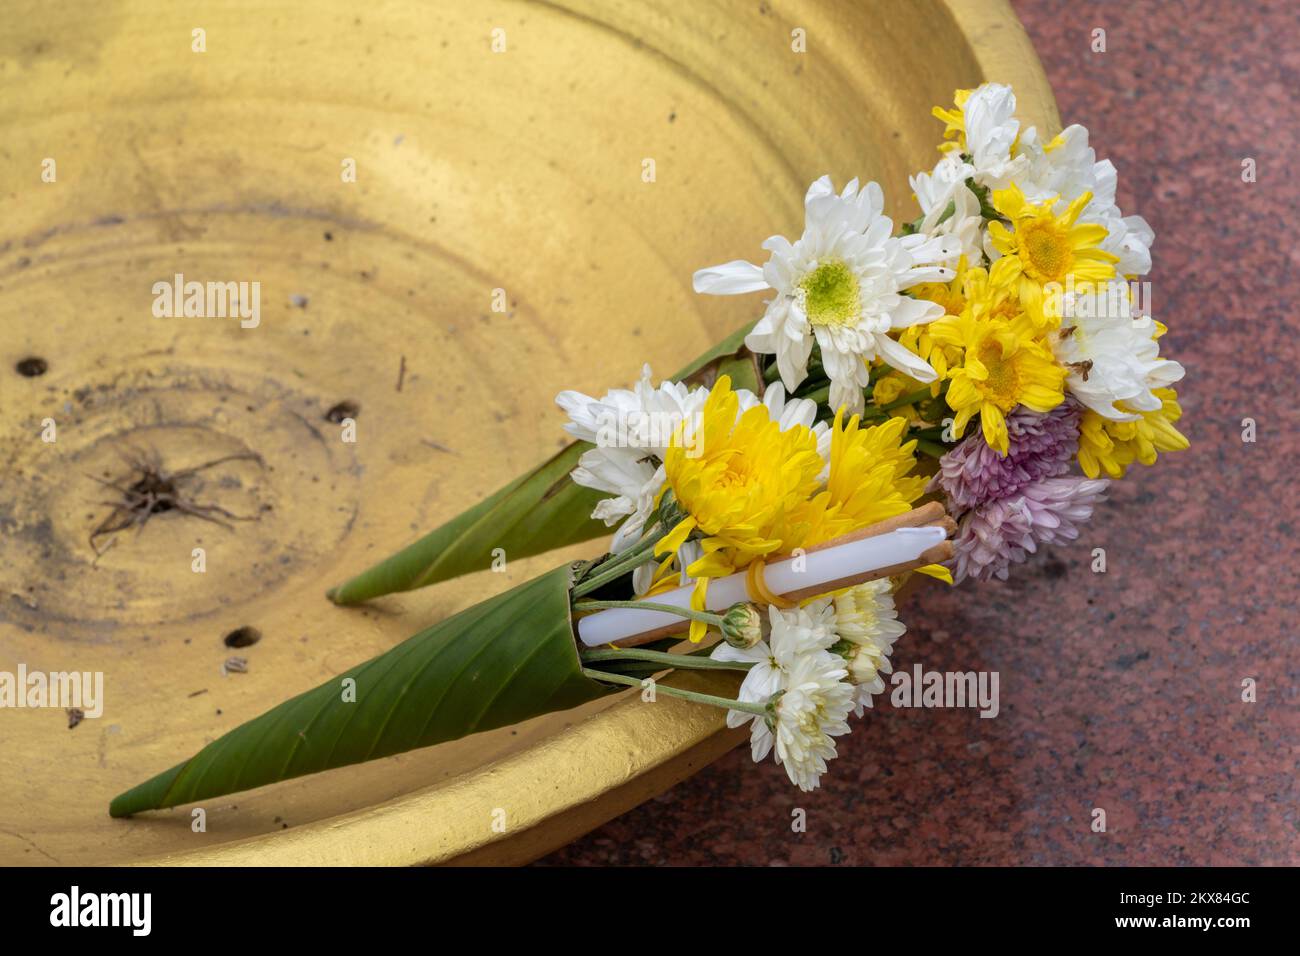 Offerte tradizionali di fiori di crisantemo, candele e bastoni di incenso in coni di foglia di banana incastonati in una ciotola d'oro nel tempio buddista, Thailandia Foto Stock